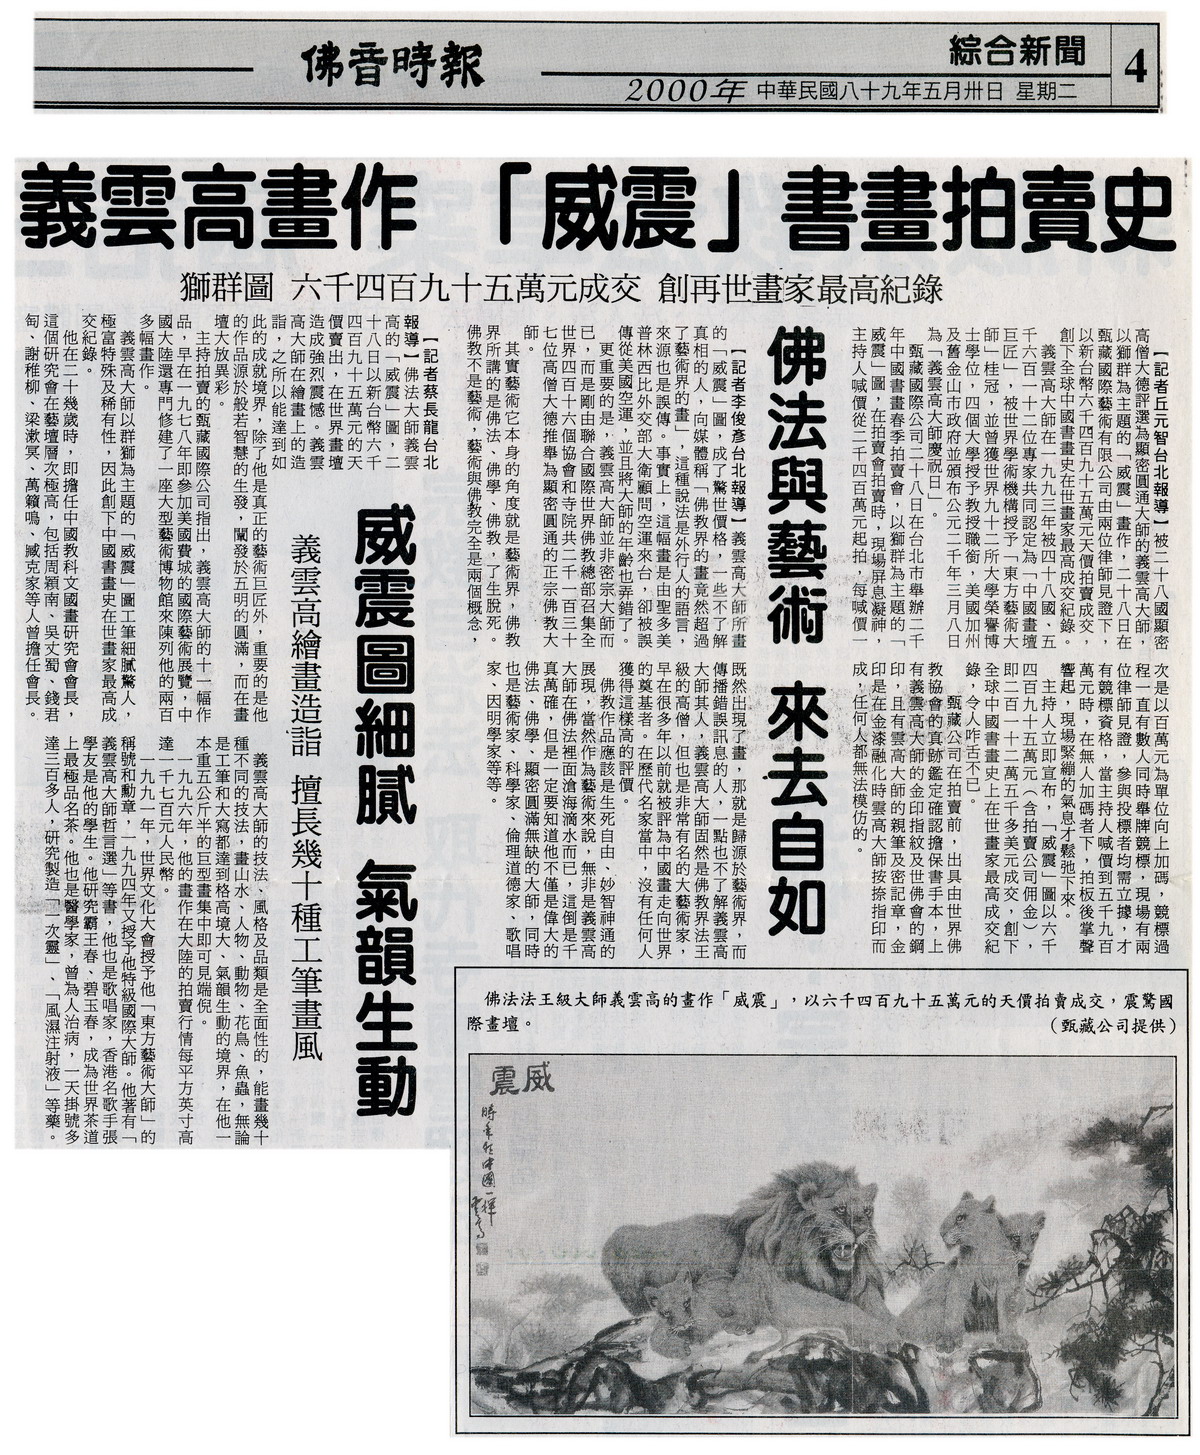 义云高画作「威震」书画拍卖史  狮群图创在世画家最高纪录 第2张